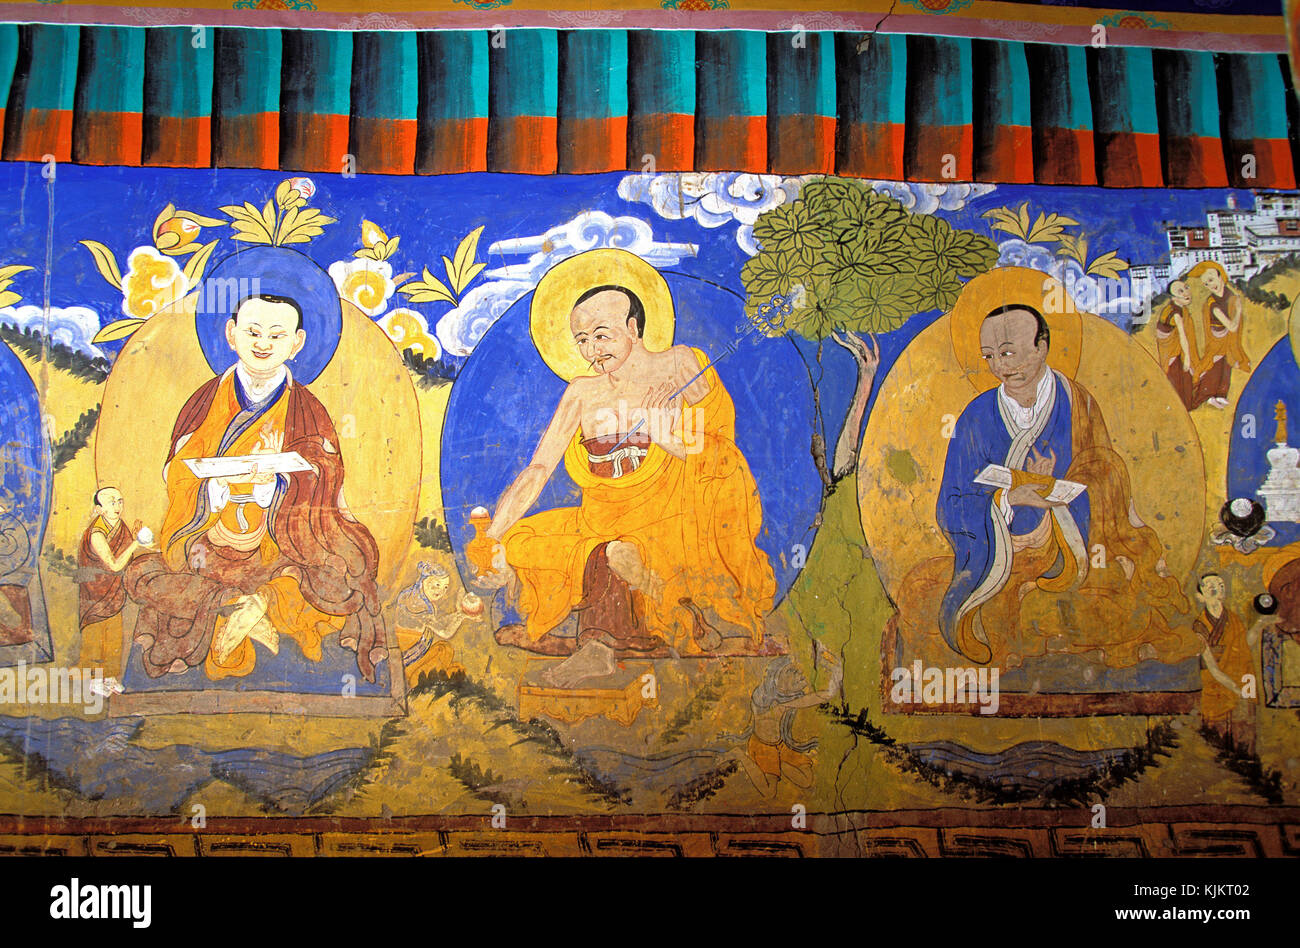 Tiksey buddhist monastery. Ladakh. Fresco depicting the Buddha and lamas.    India. Stock Photo